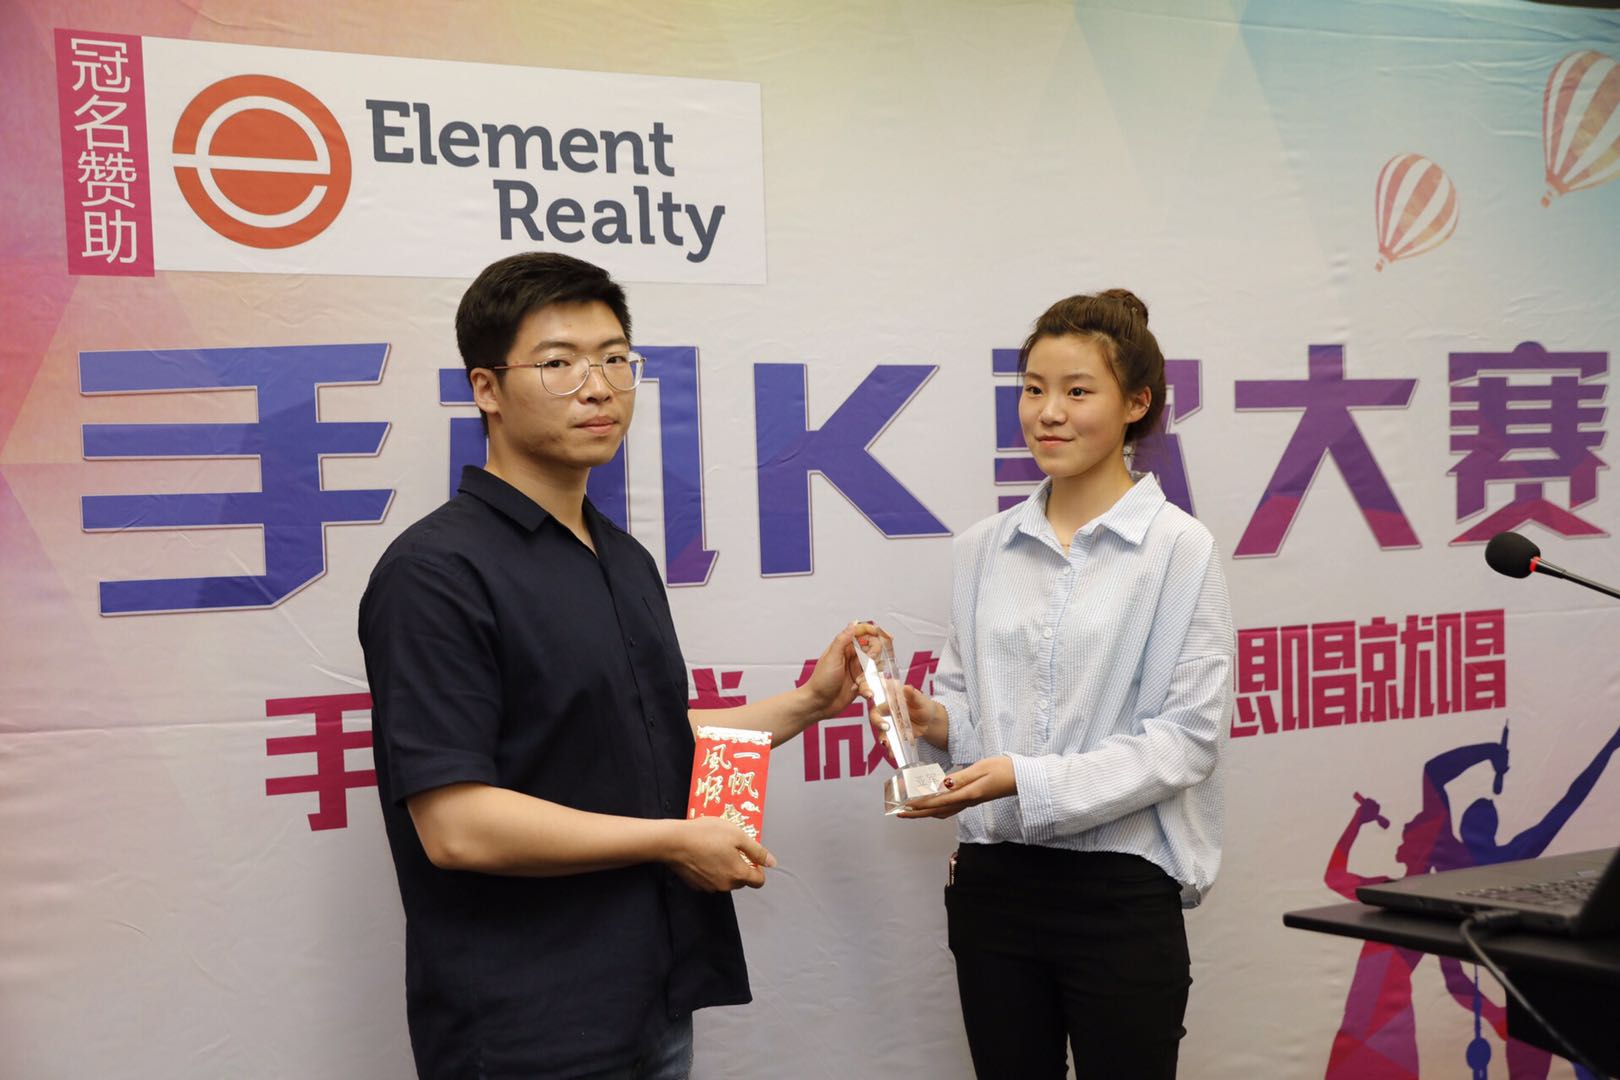 新闻图9 Element Realty手机K歌大赛颁奖典礼在悉尼举行